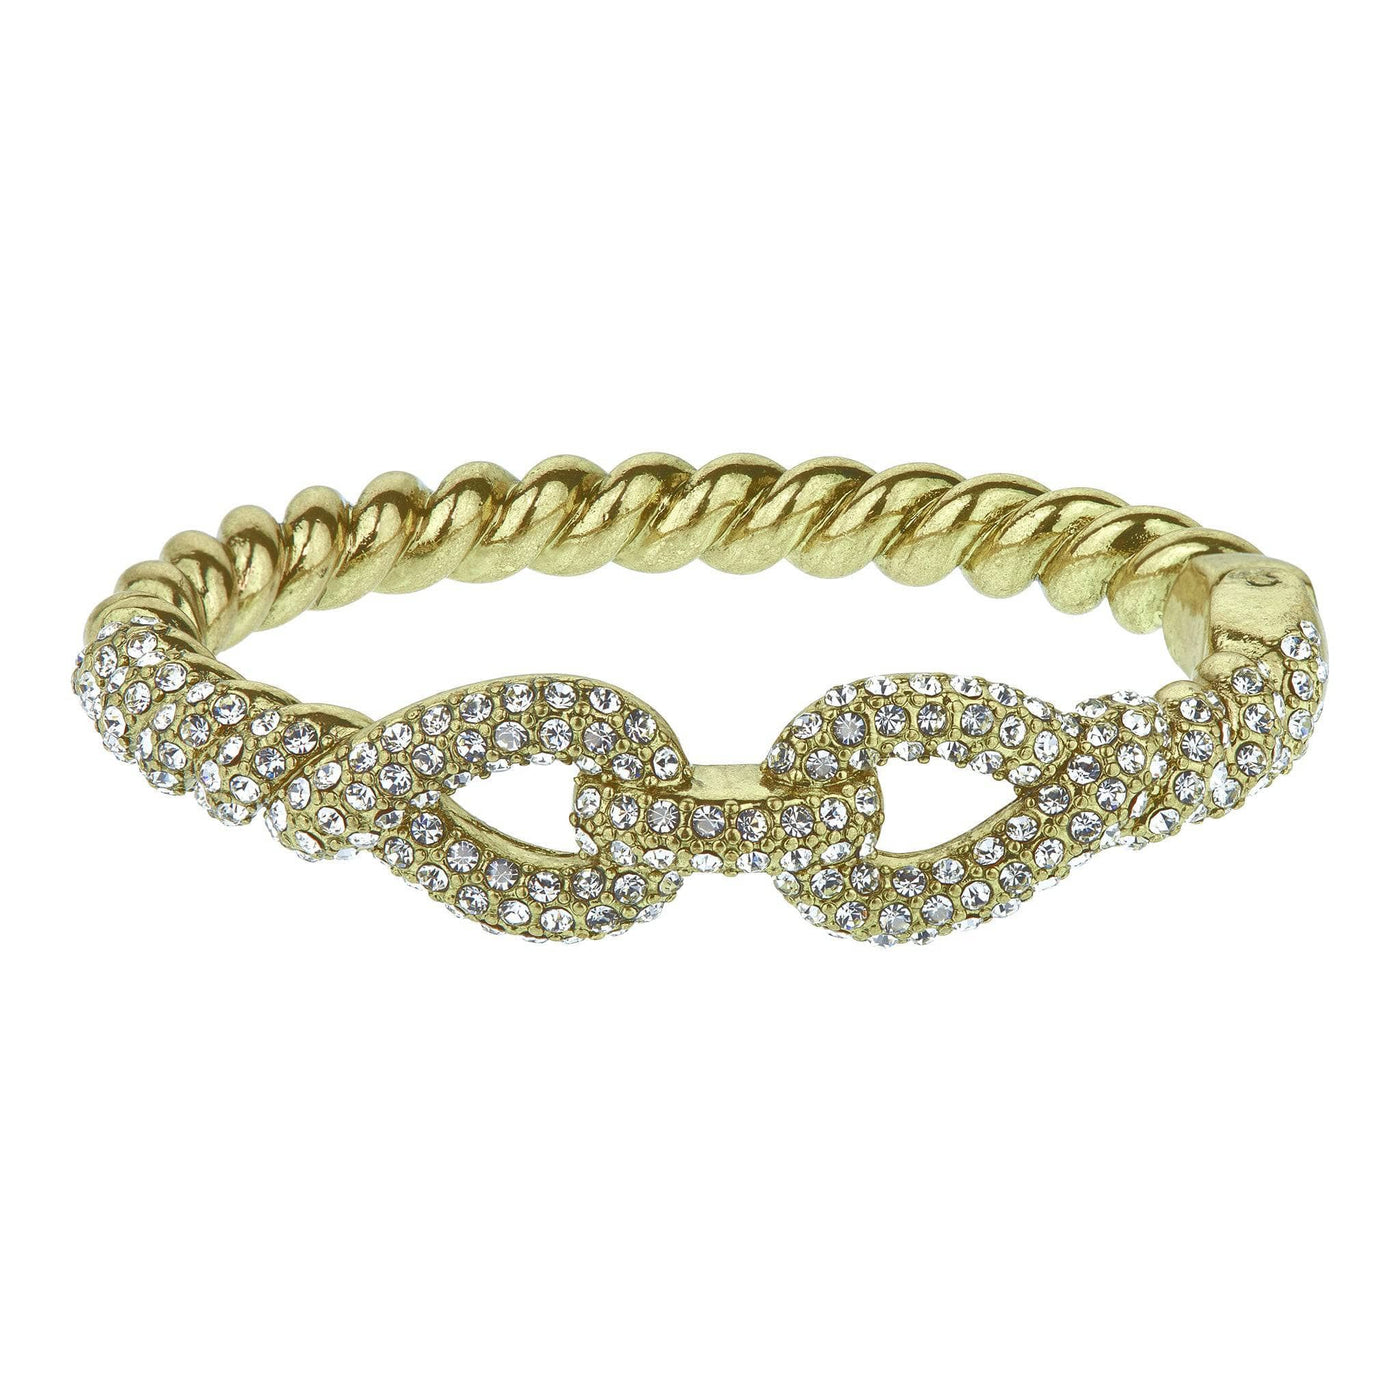 Heidi Daus®"Sleek and Sophisticated" Crystal Bracelet